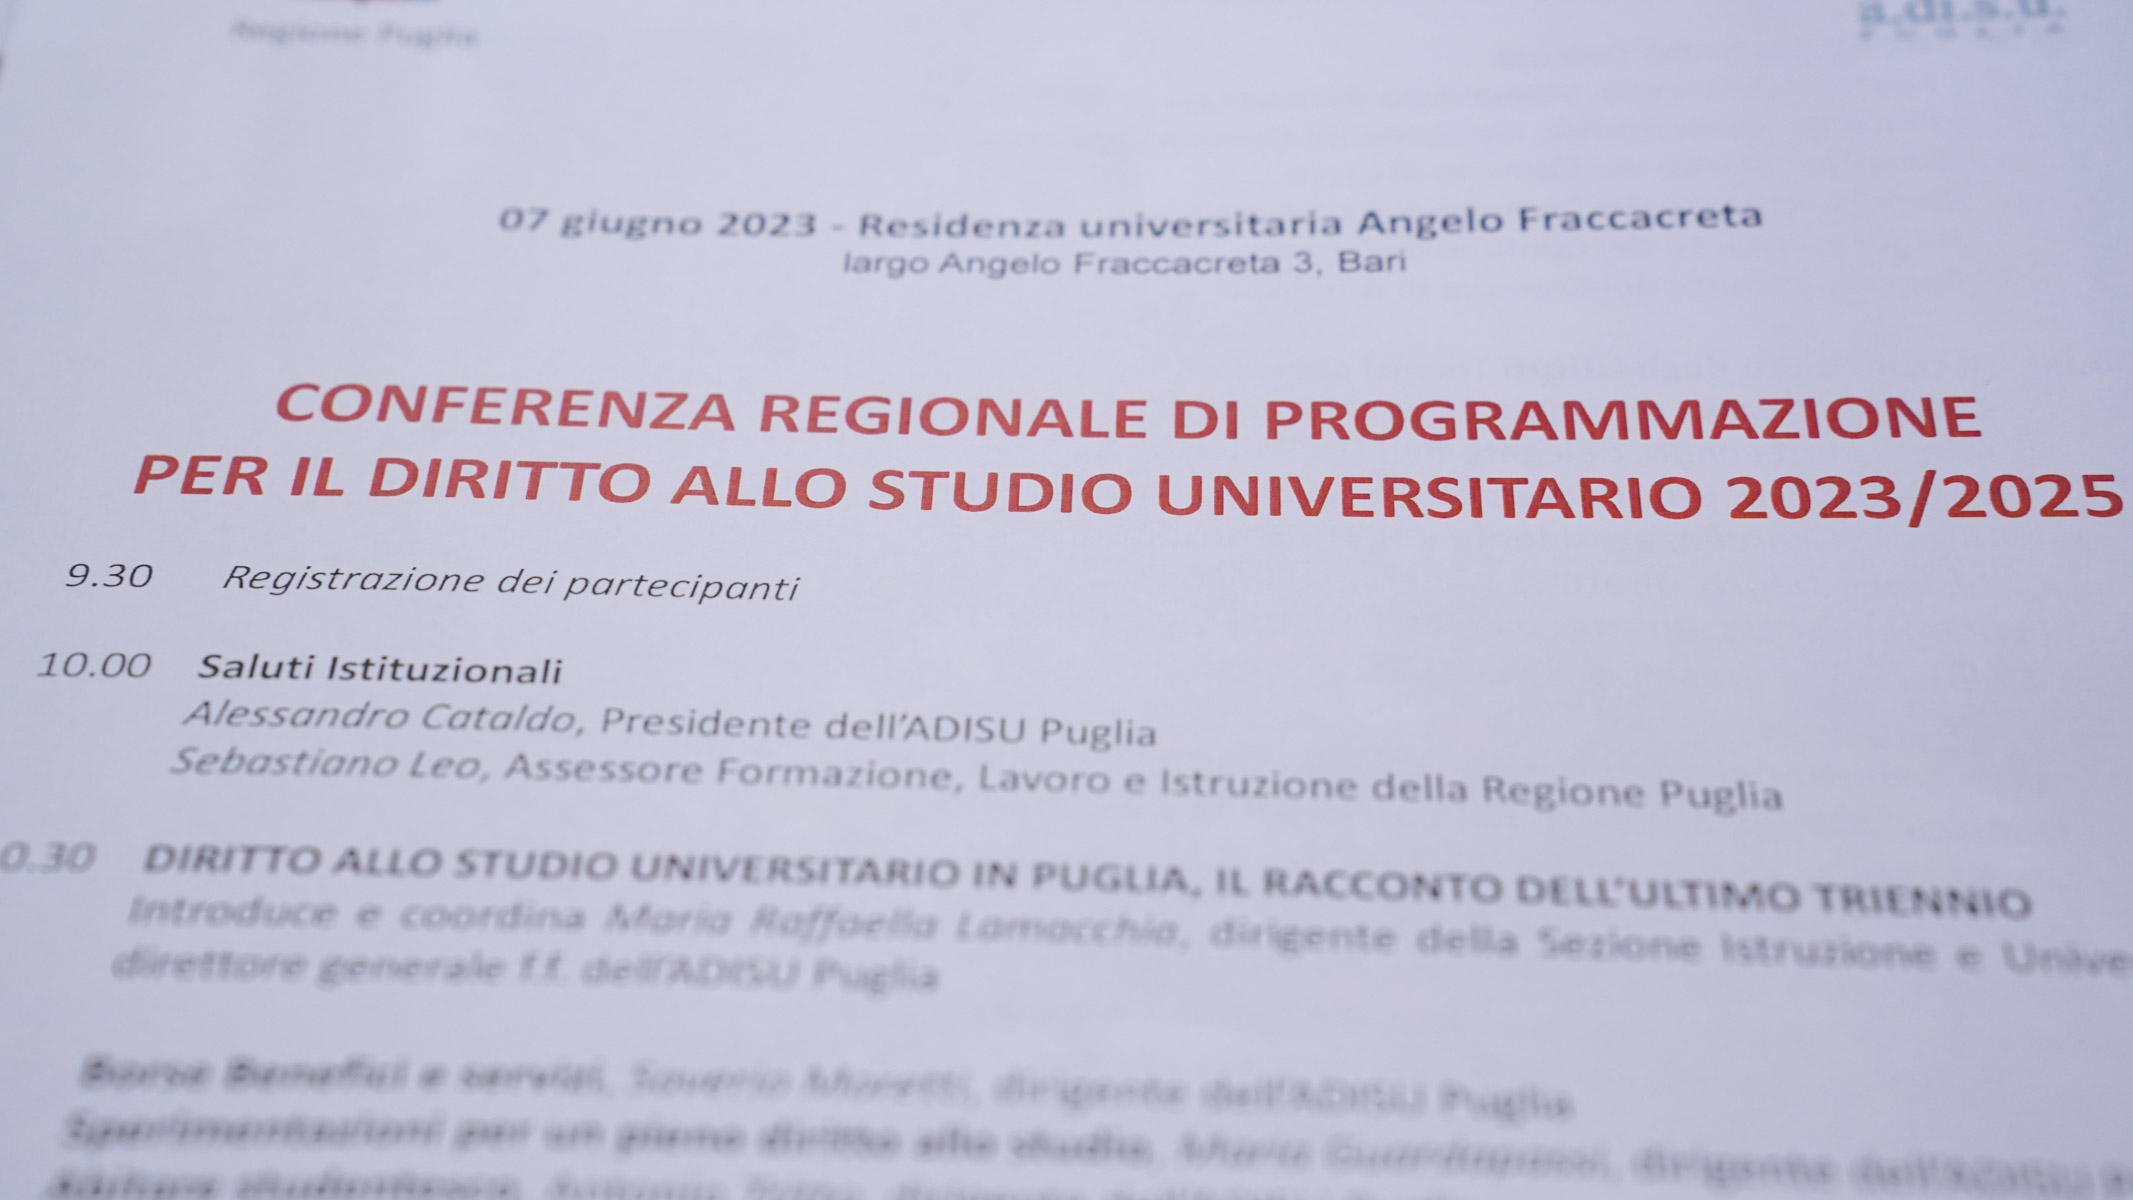 Galleria L’assessore Leo “Il presente e il futuro del diritto allo studio per una Puglia Regione Universitaria” - Diapositiva 3 di 13